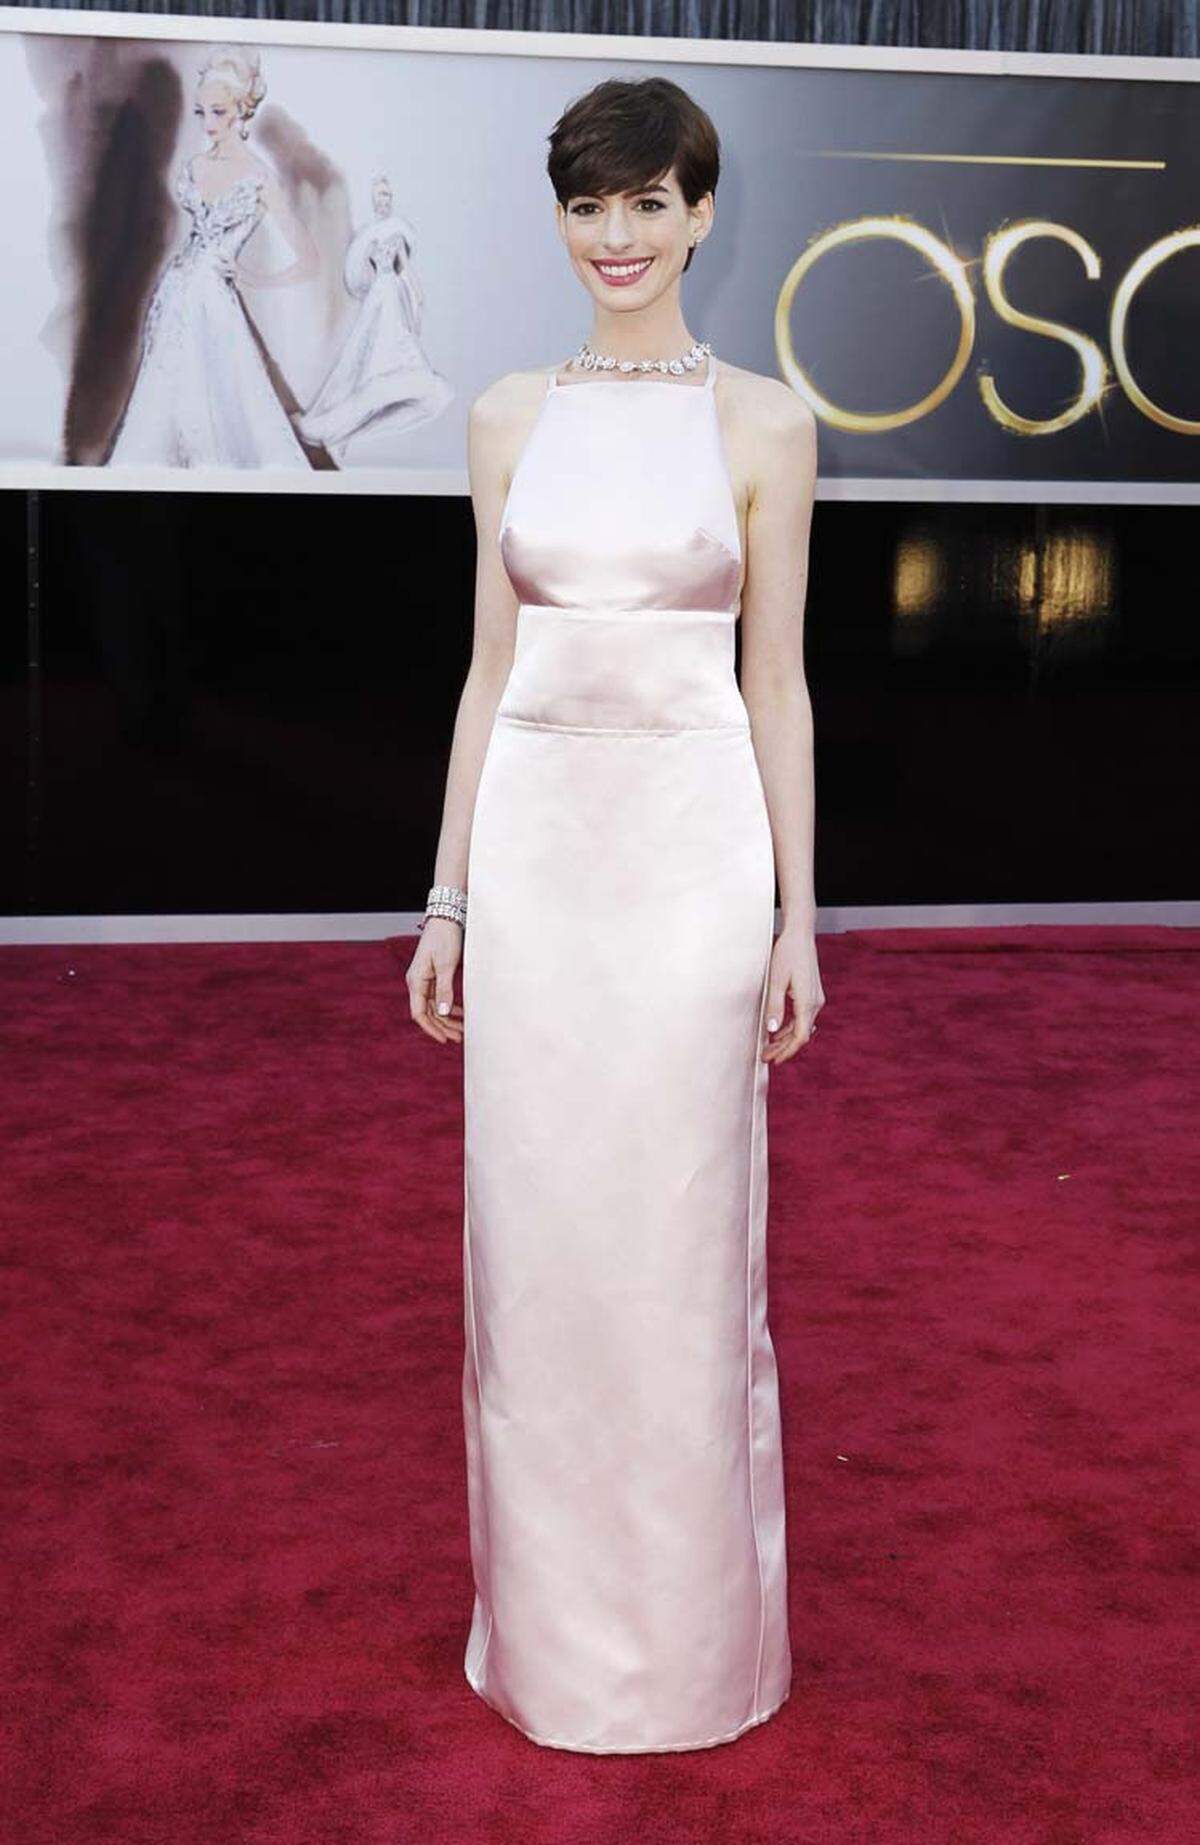 2013 machte Anne Hathaway in diesem Prada-Kleid von sich sprechen. Die Nähte des Oberteils sorgten fast für einen "Nipplegate"-Skandal.  